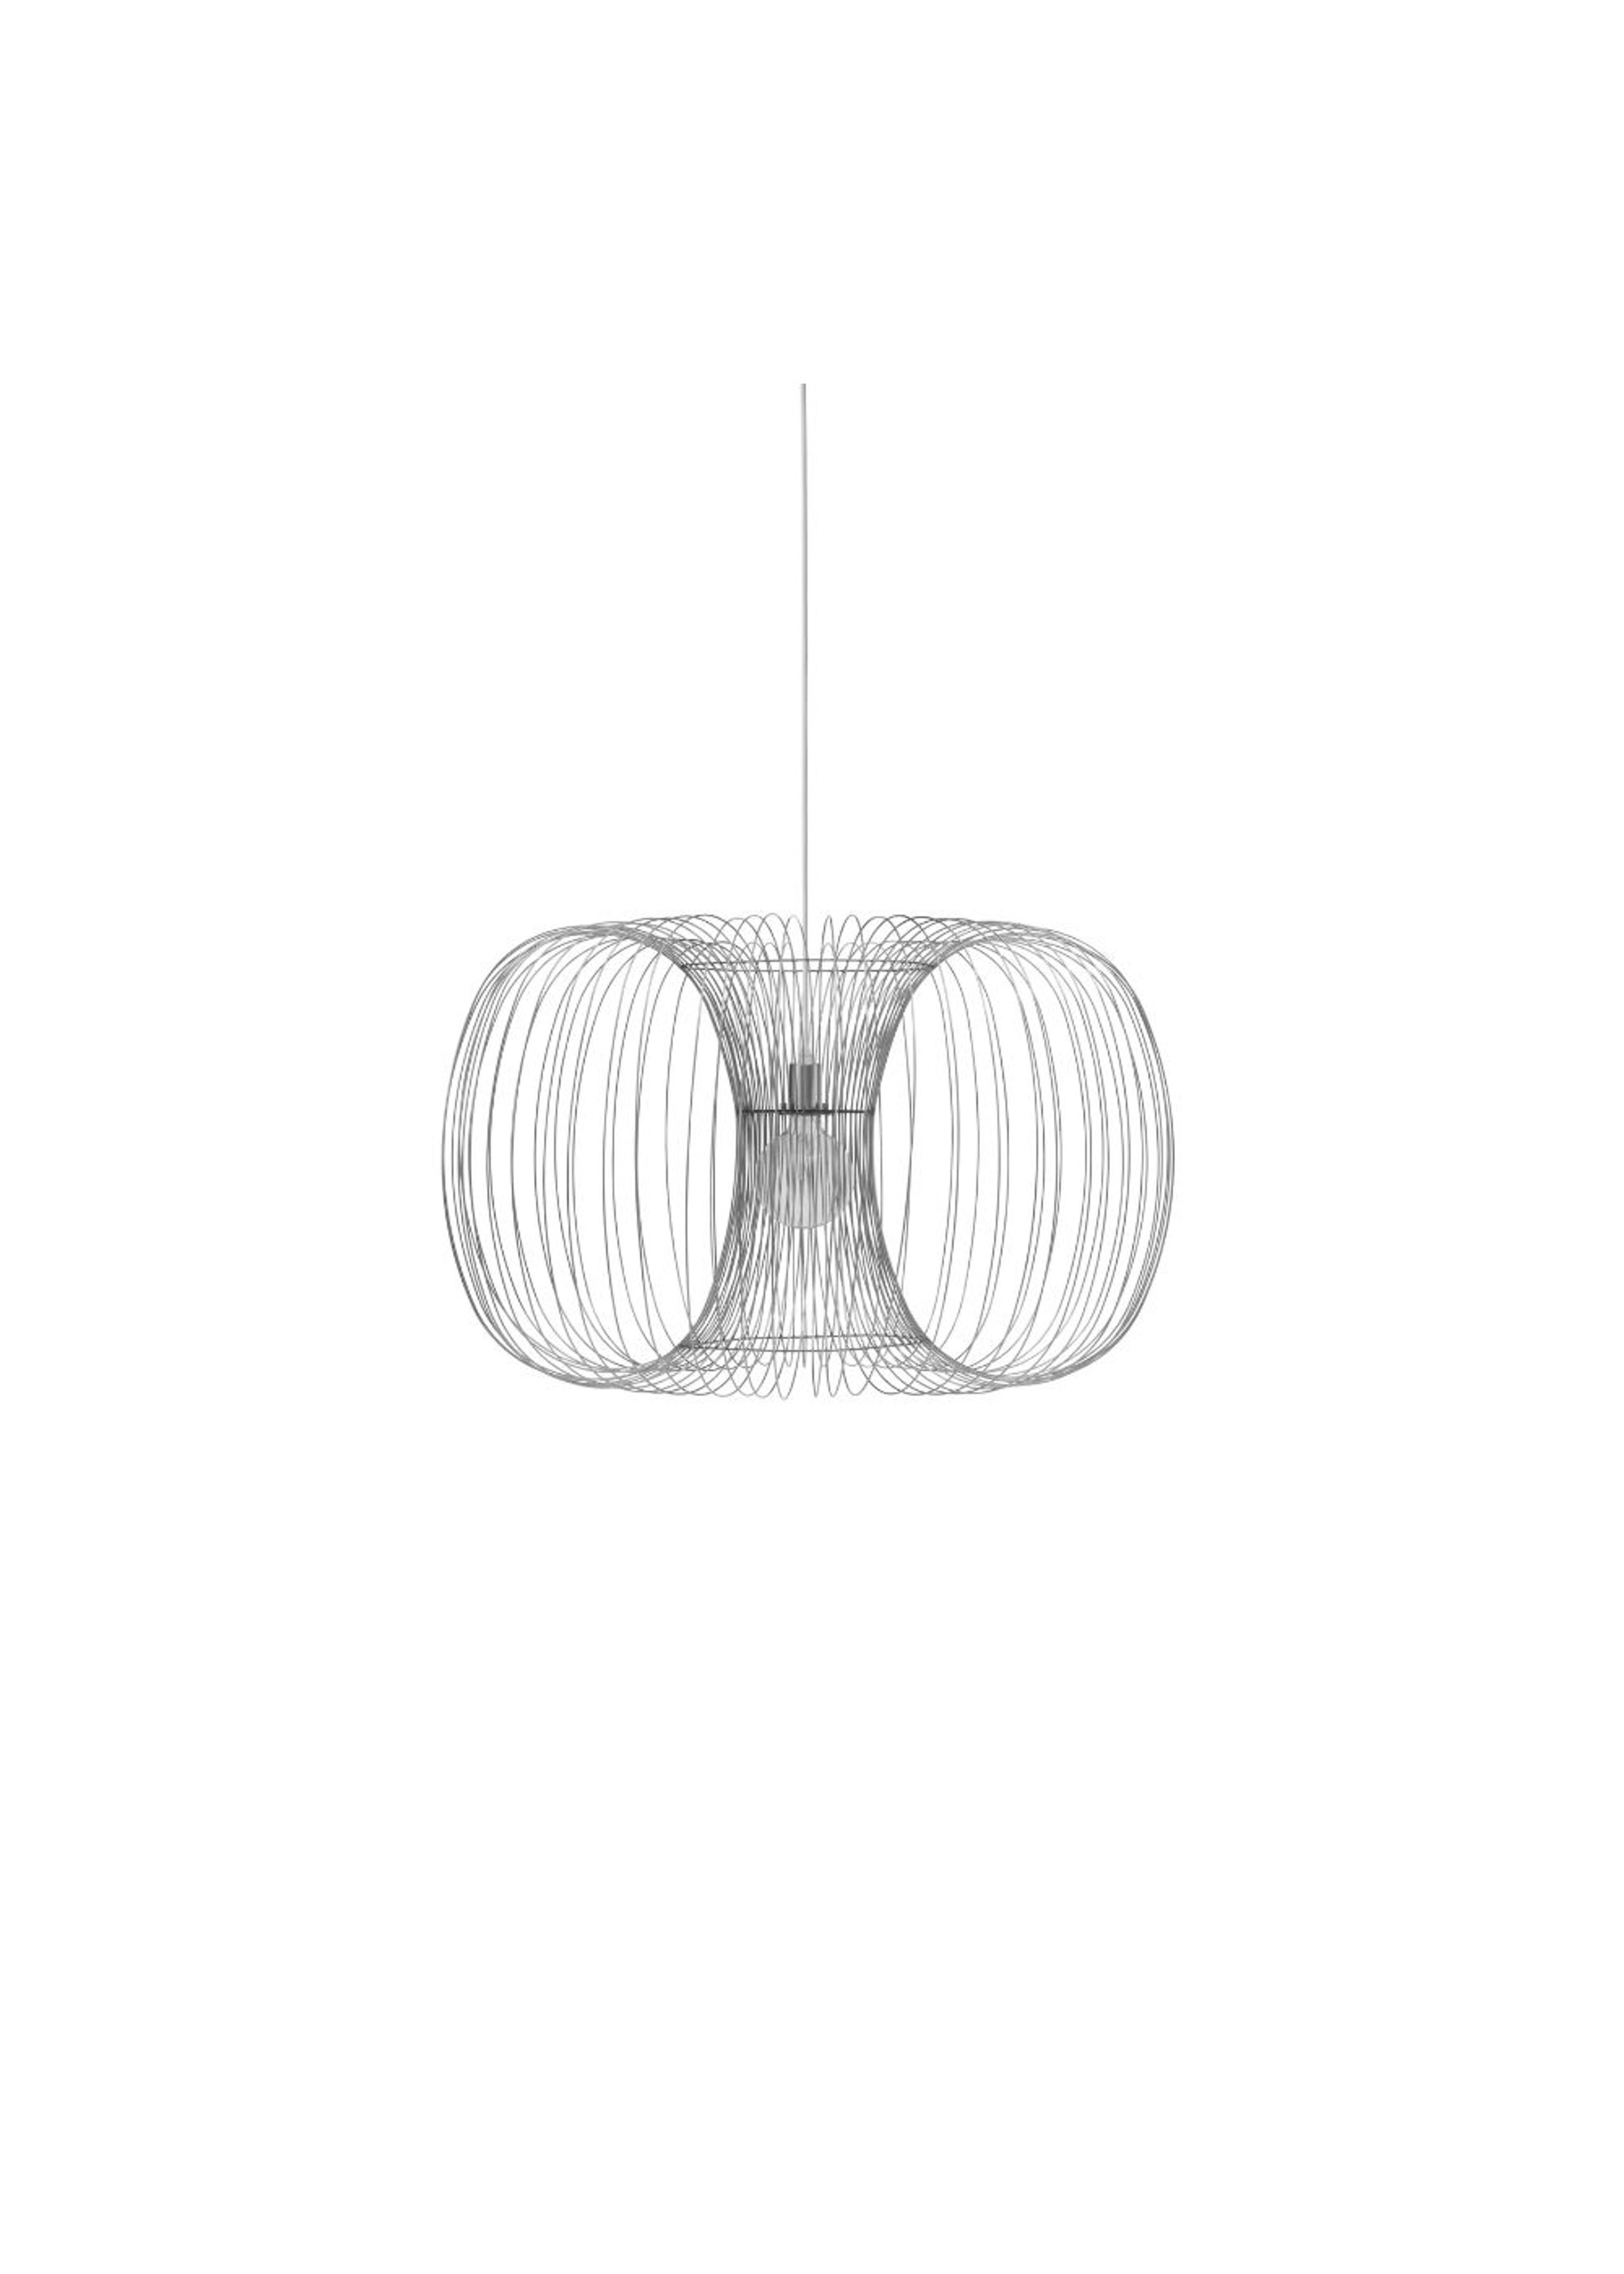 Normann Copenhagen - Pendelleuchte - Coil Lamp - Stainless Steel / M